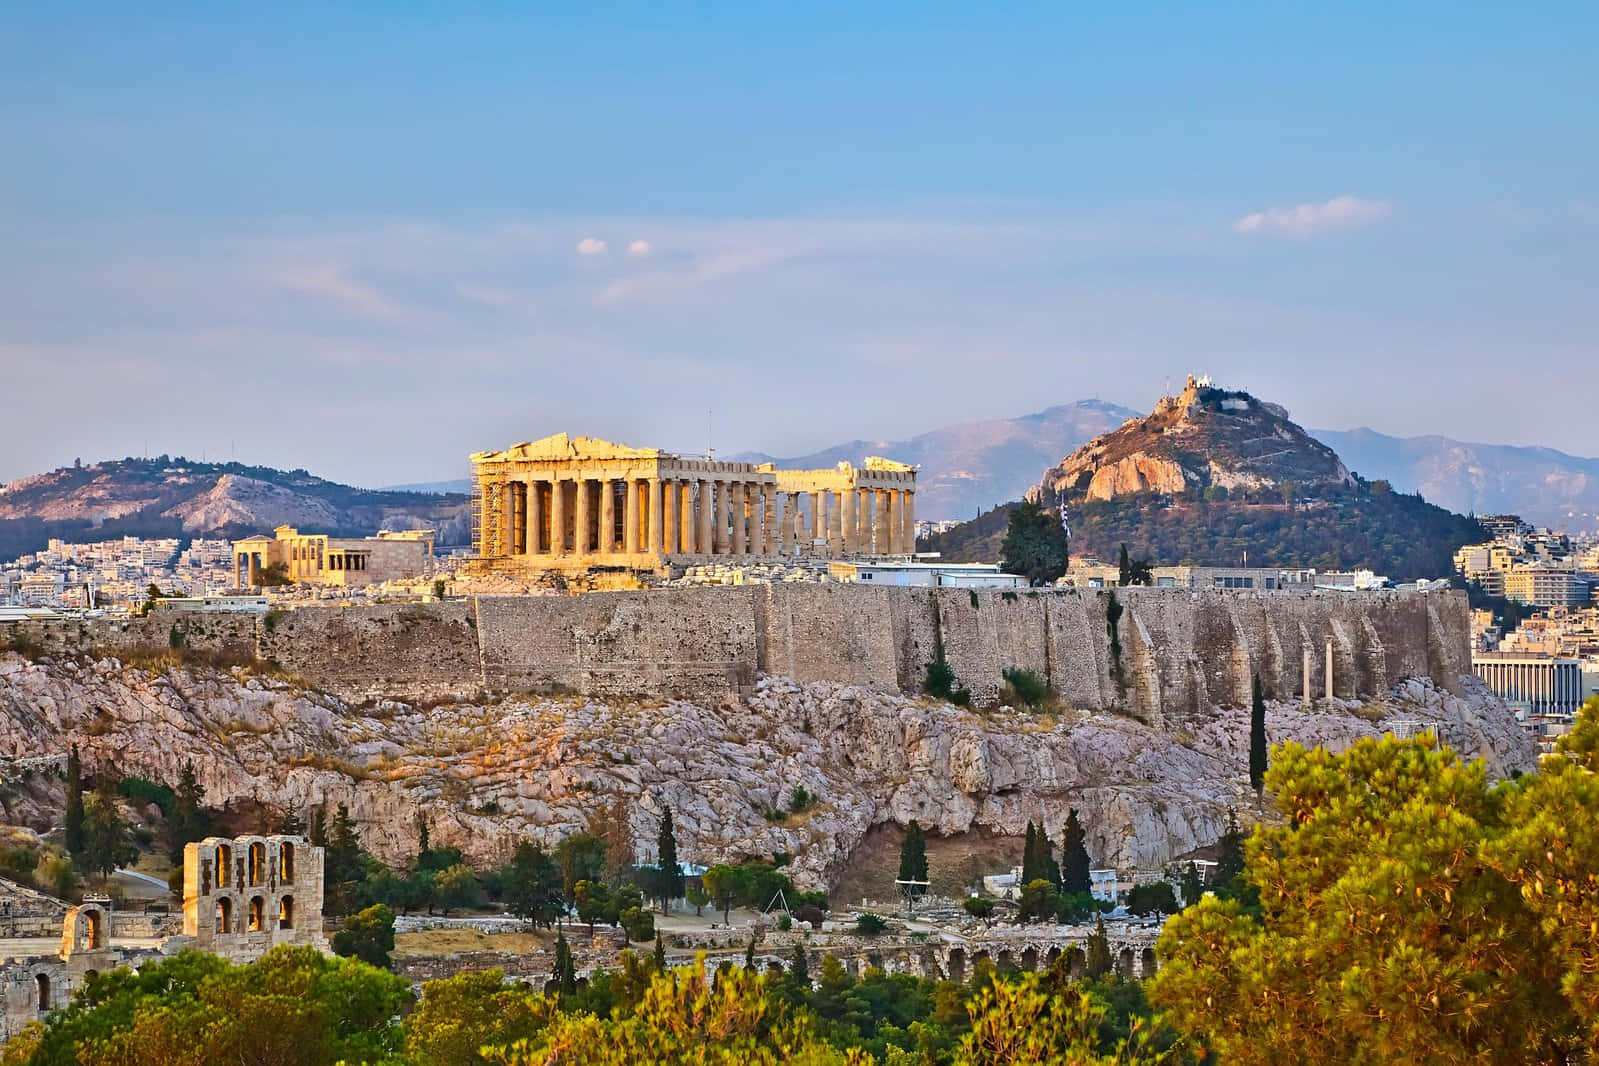 Acropolis, Greece - Acropolis Tour